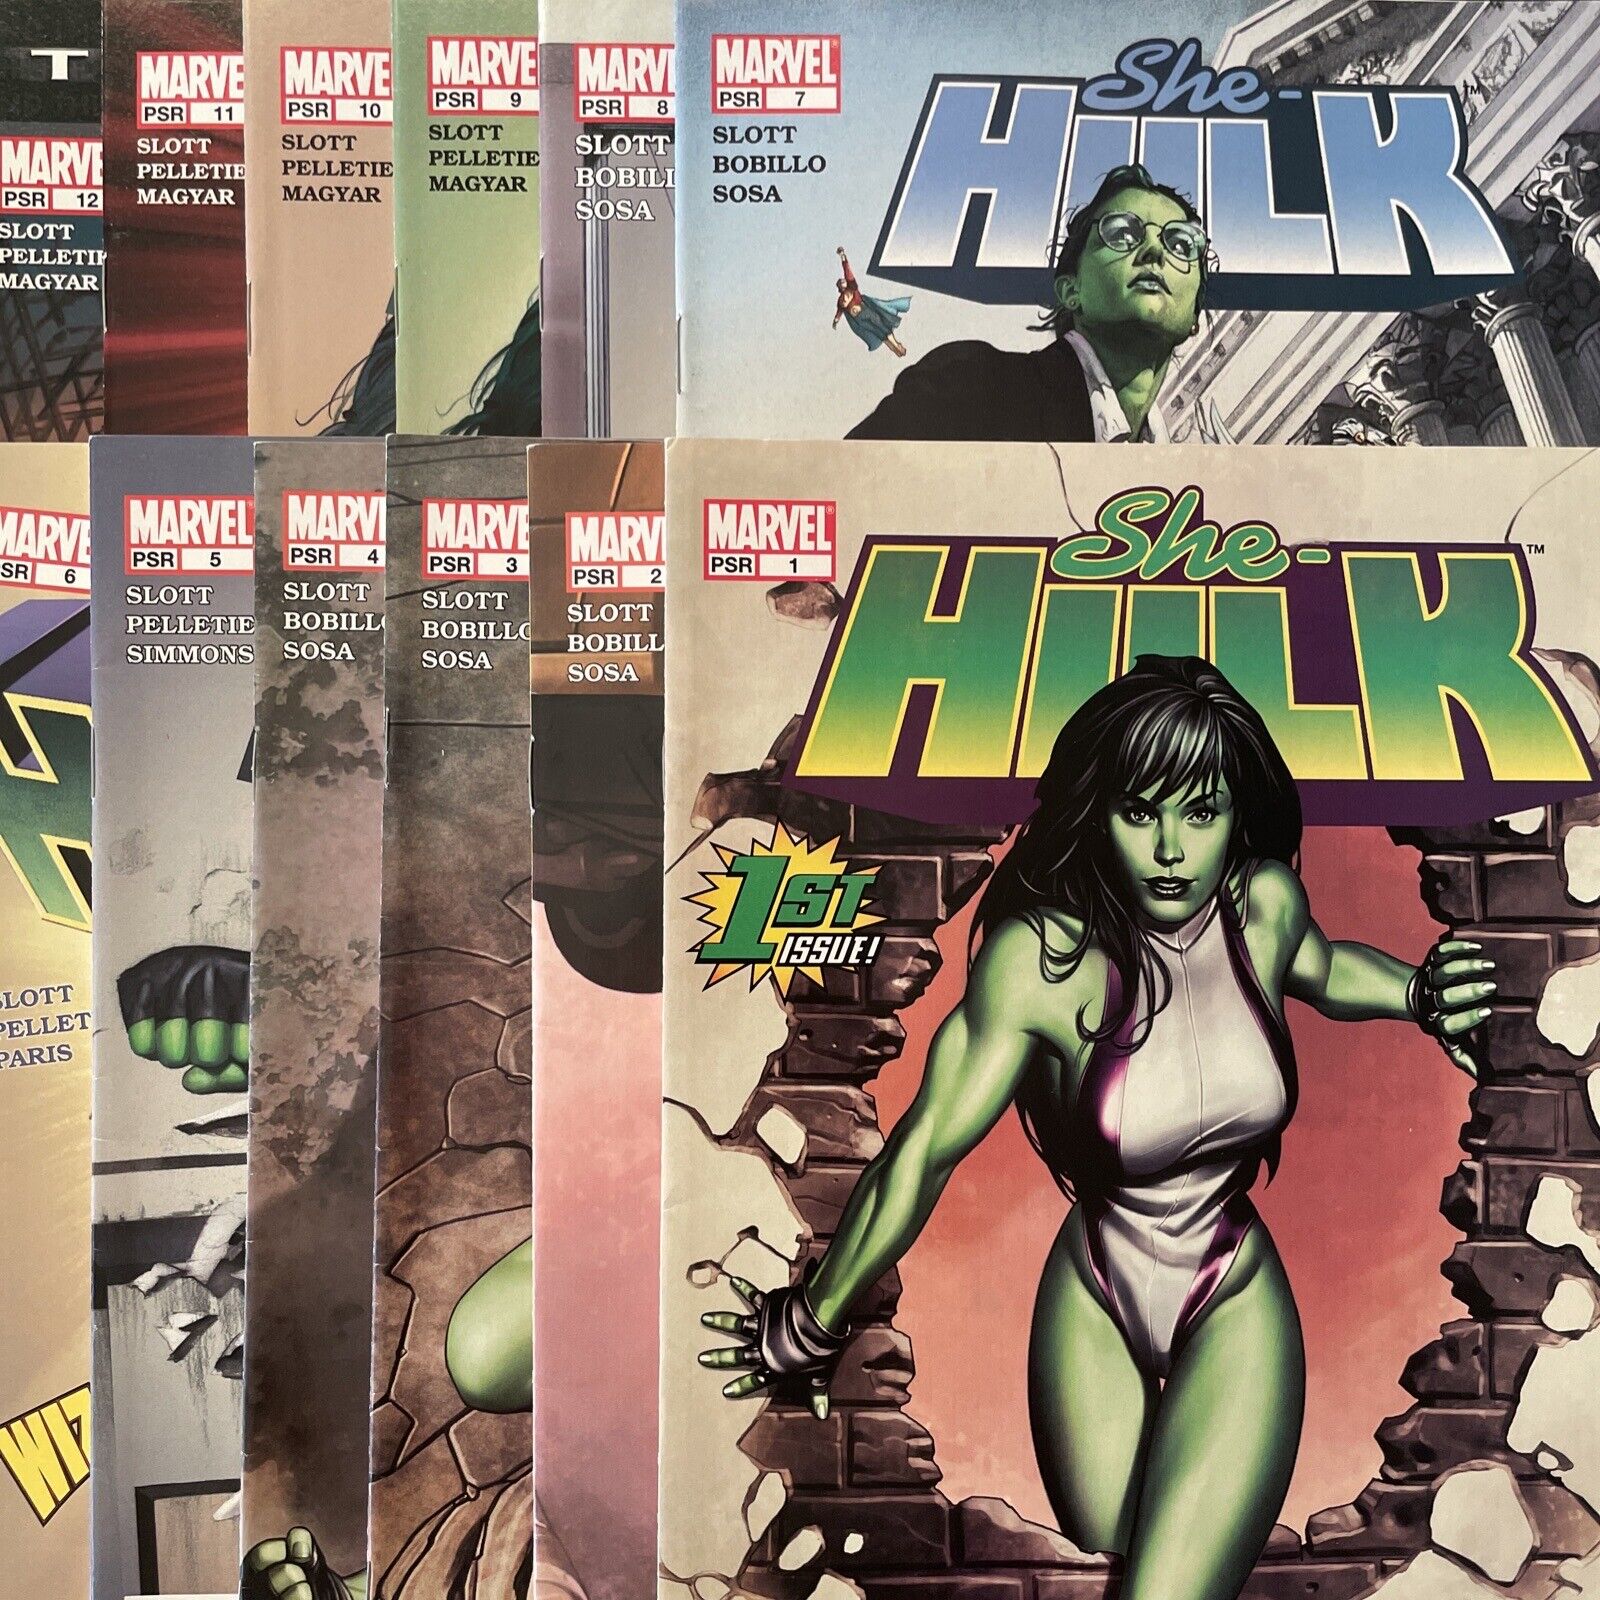 She-Hulk #1 2 3 4 5 6 7 8 9 10 11 & 12 (Marvel 2004) #1-12 Lot Of 12 Comics